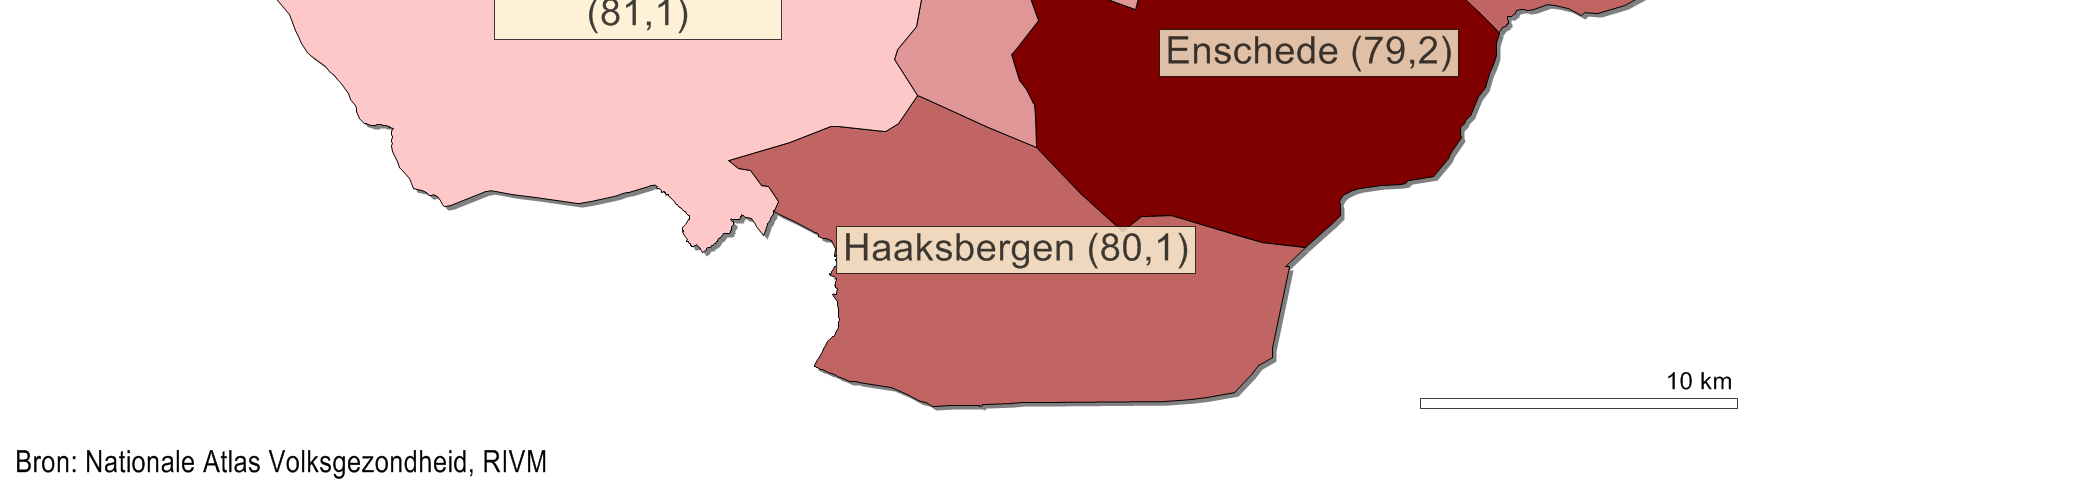 3). Ruim vier op de tien inwoners (42%) in Twente is afkomstig uit Almelo, Twenterand of Enschede.